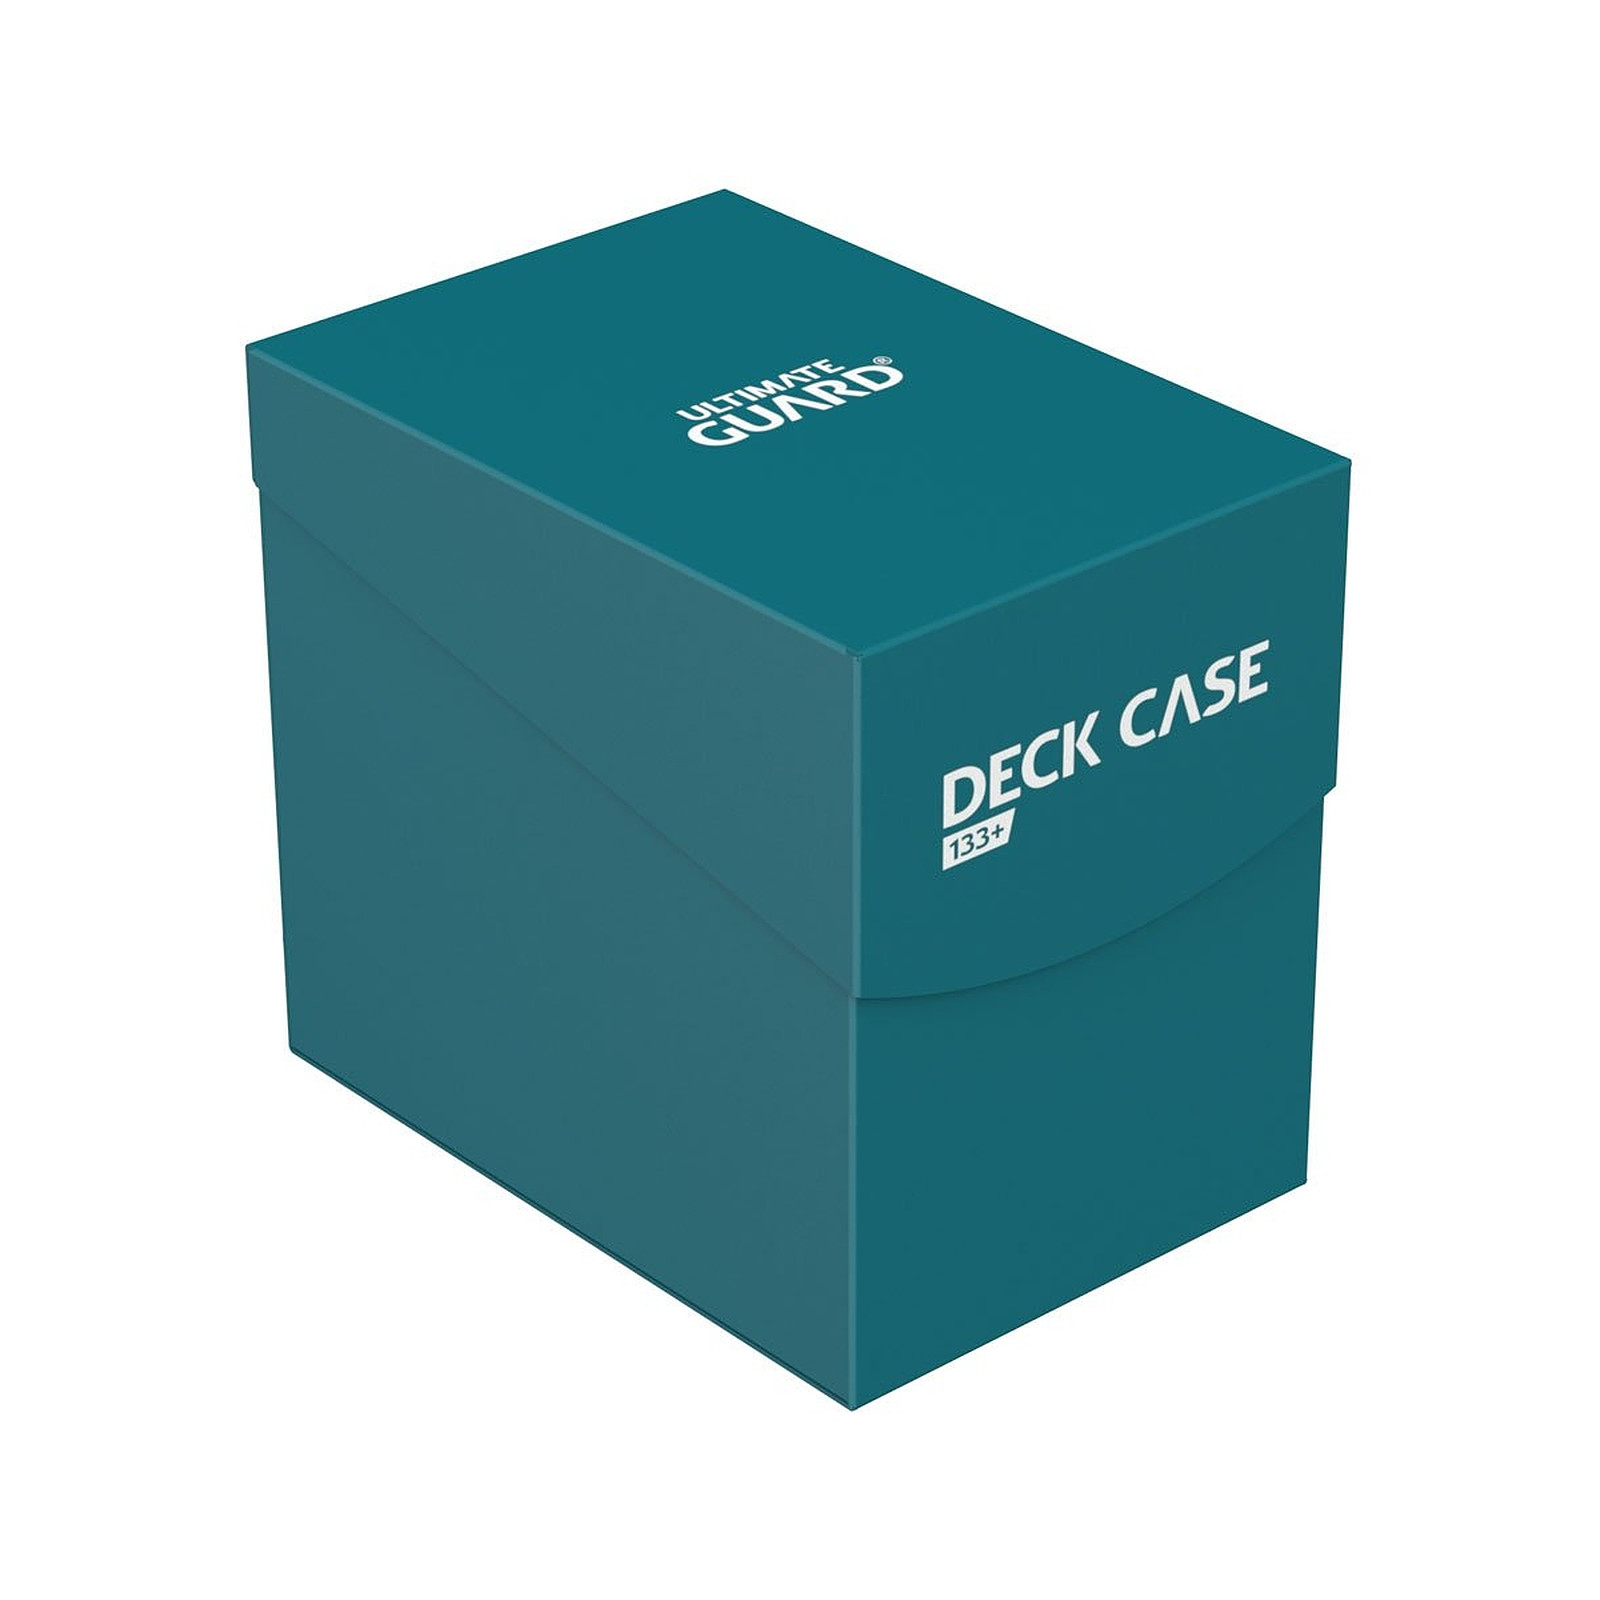 Ultimate Guard - Boite pour cartes Deck Case 133+ taille standard Bleu Petrole - Accessoire jeux Ultimate Guard